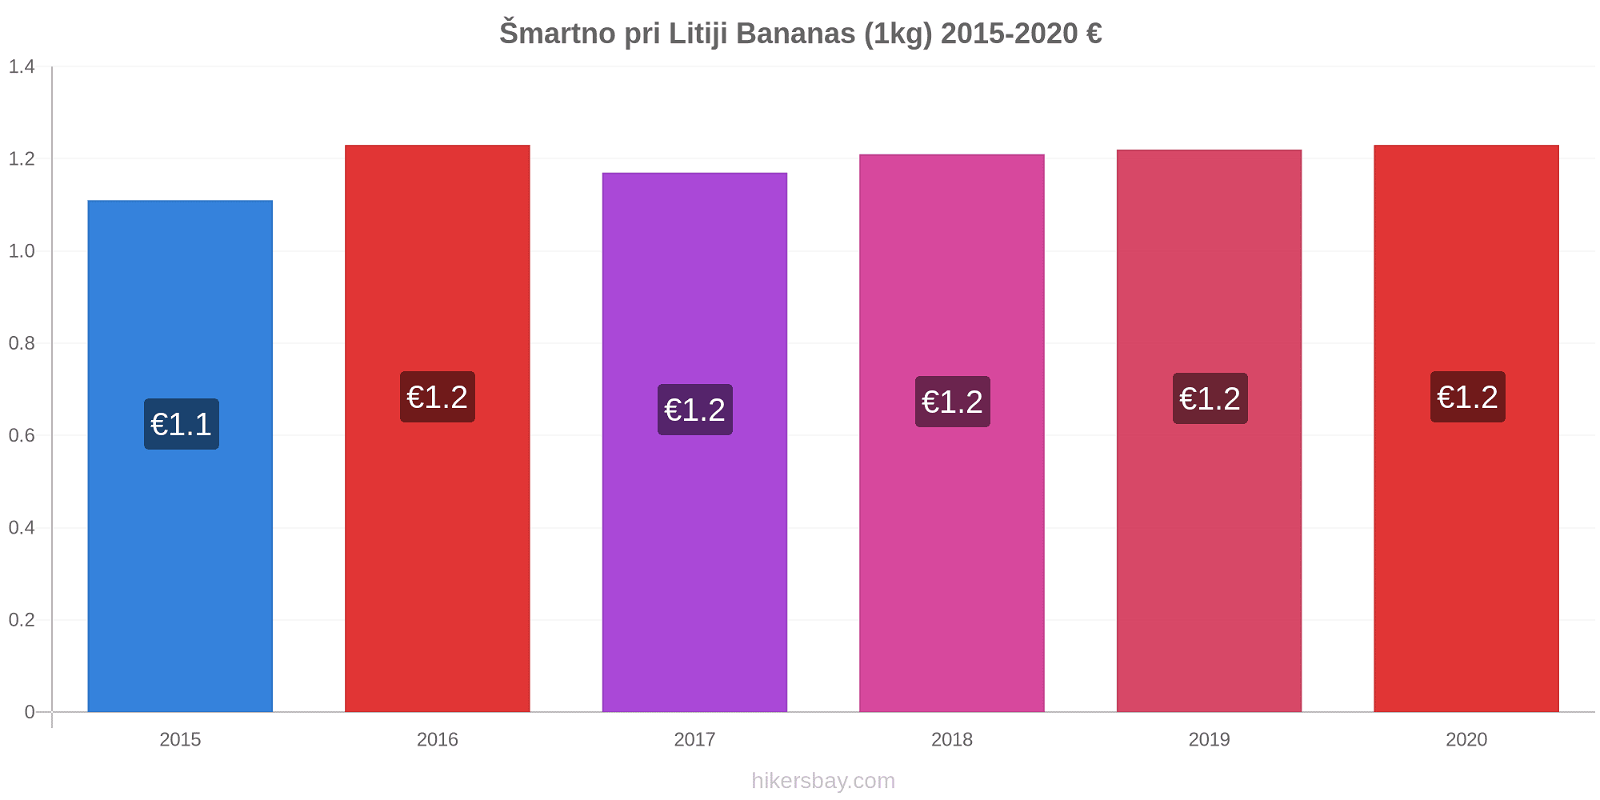 Šmartno pri Litiji price changes Bananas (1kg) hikersbay.com